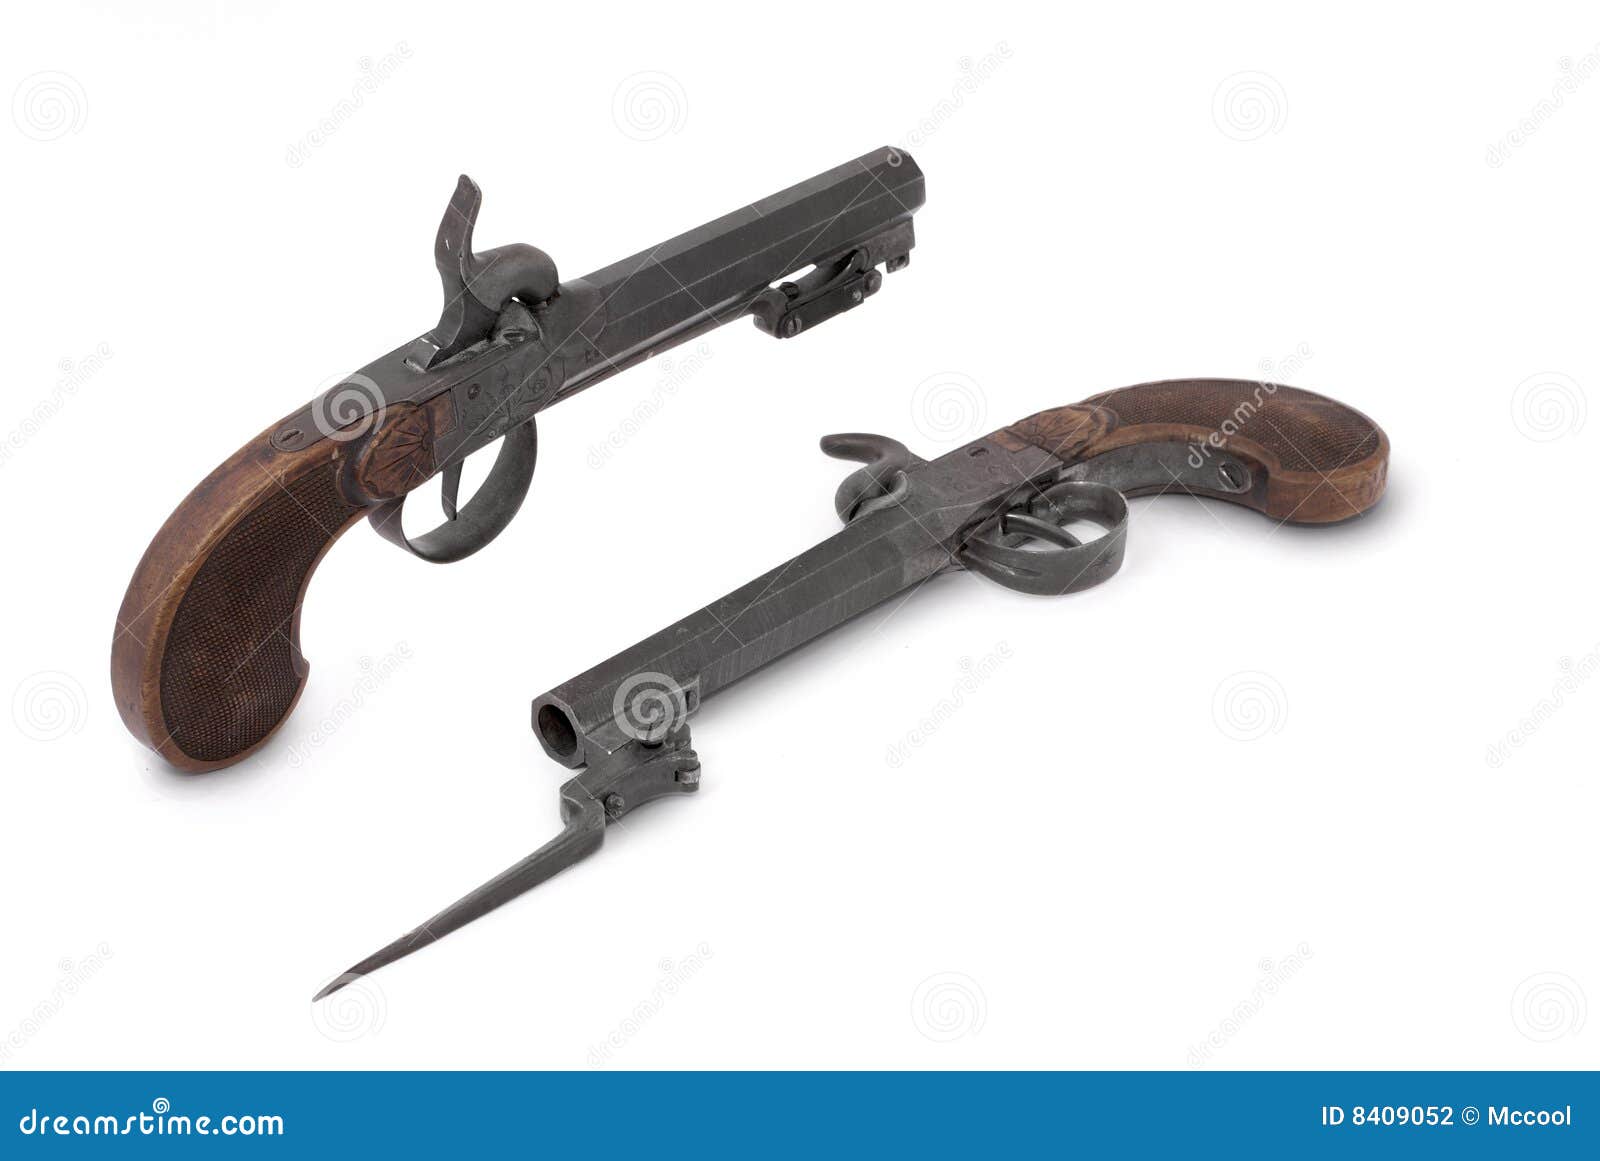 pair duel cap guns (pistol) of the 19th century